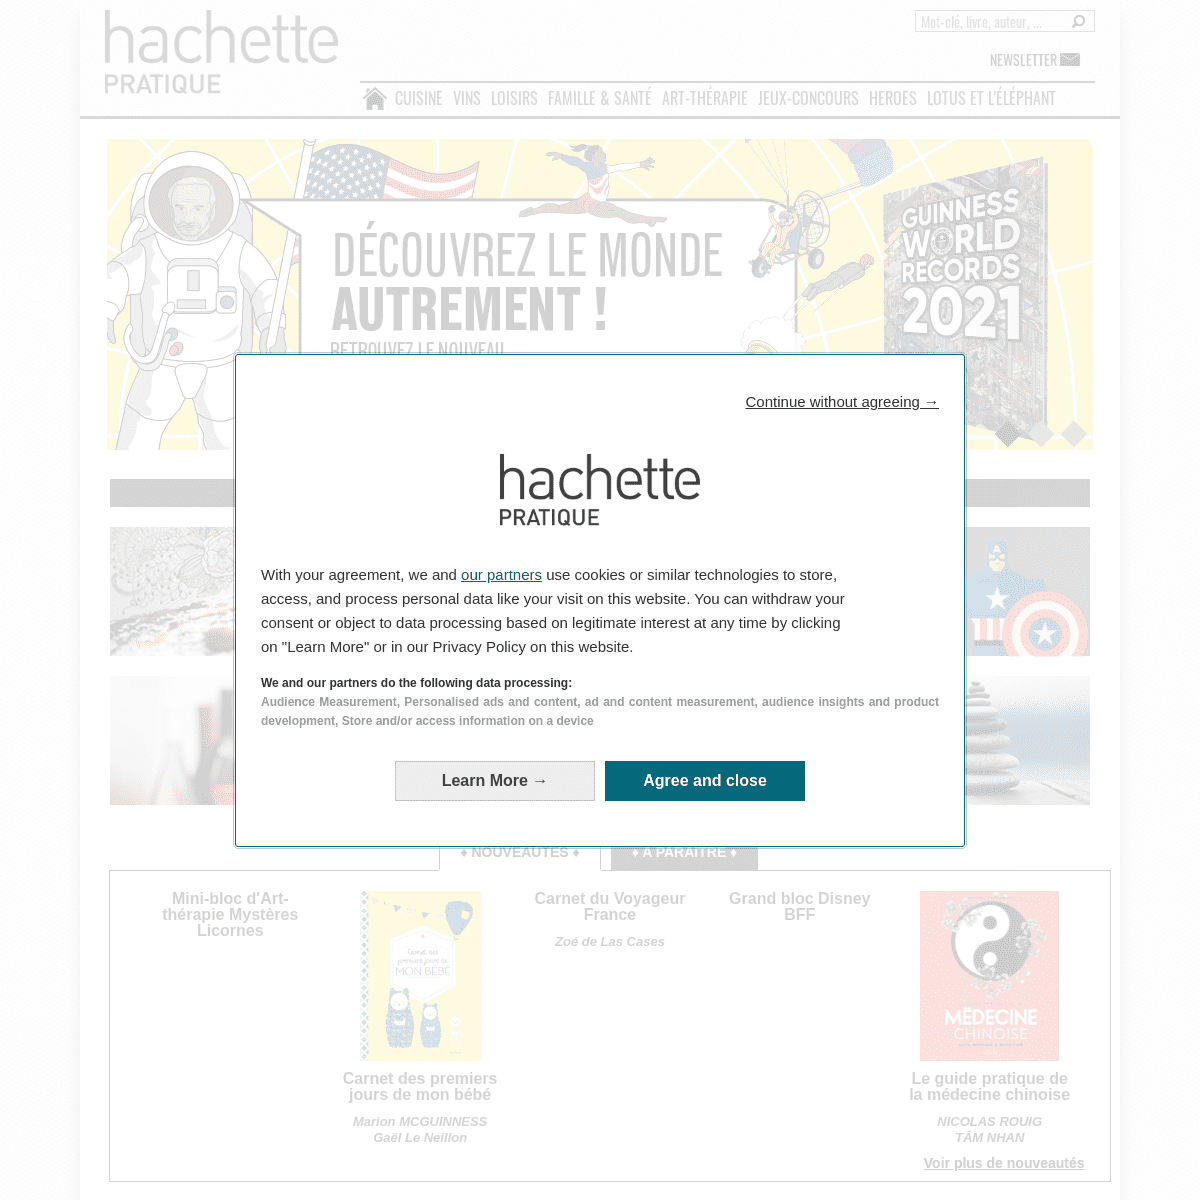 A complete backup of https://hachette-pratique.com